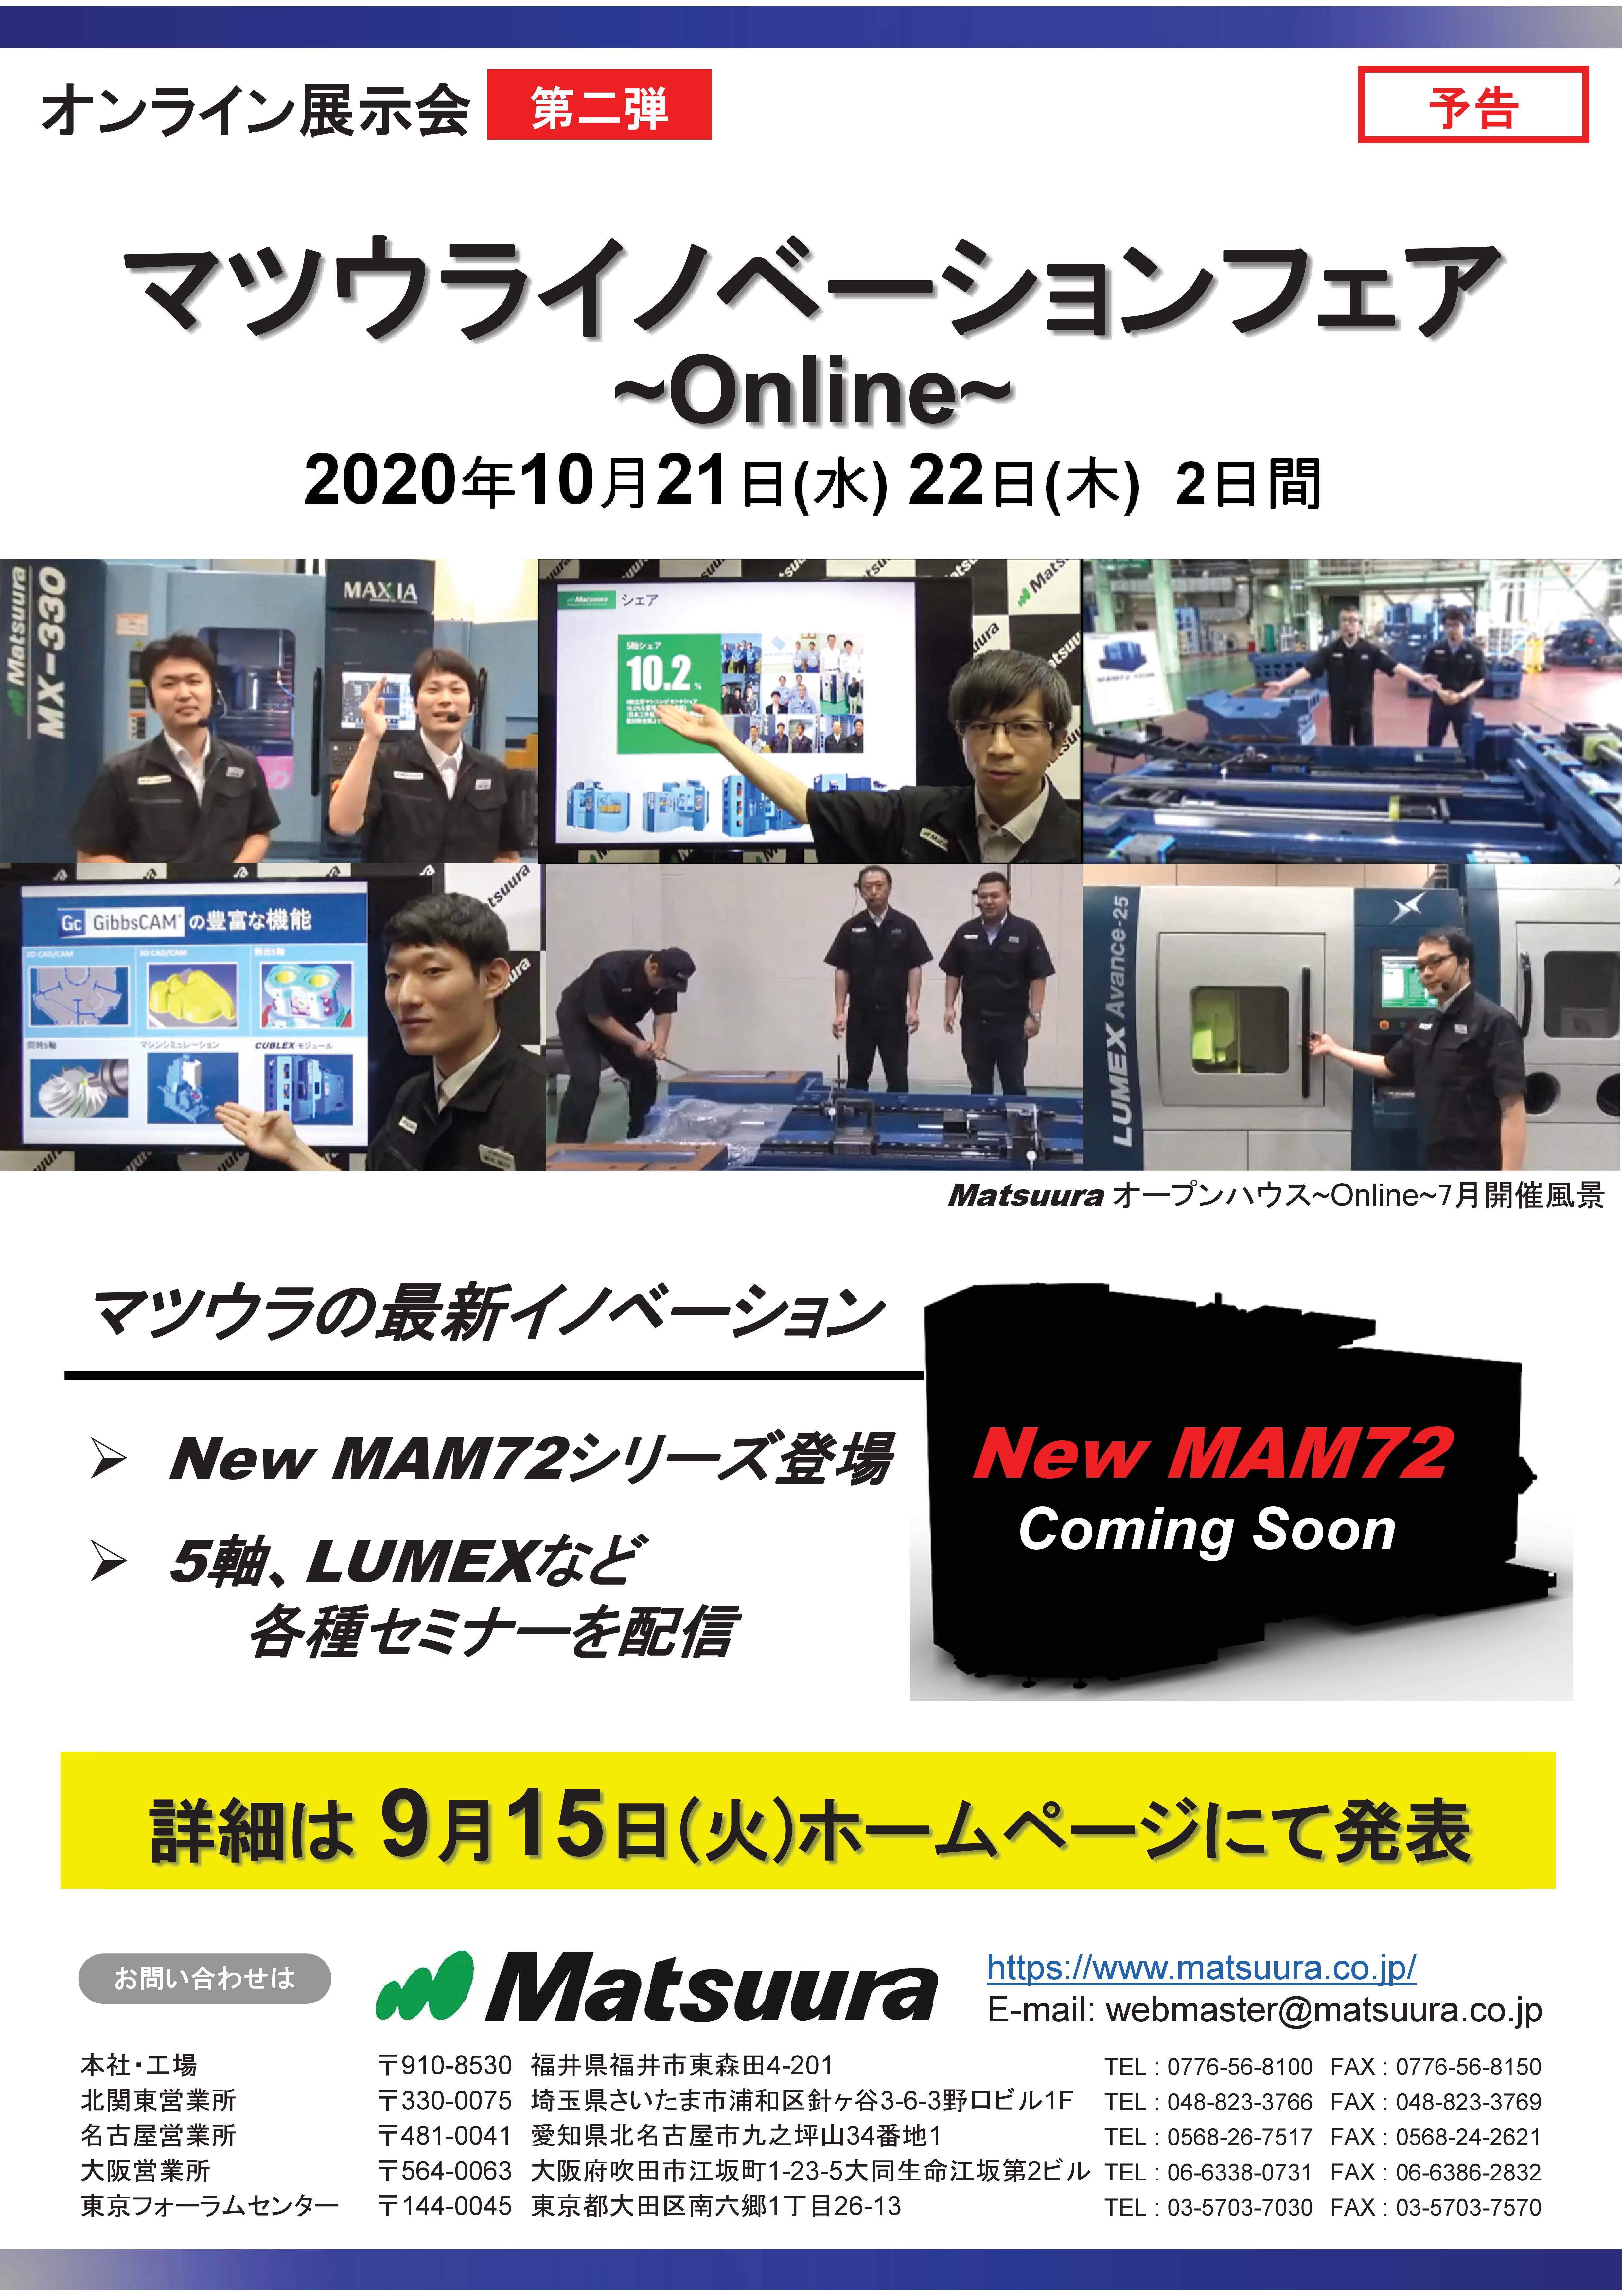 【10月開催】松浦機械製作所「マツウライノベーションフェア〜Online〜」開催のお知らせ